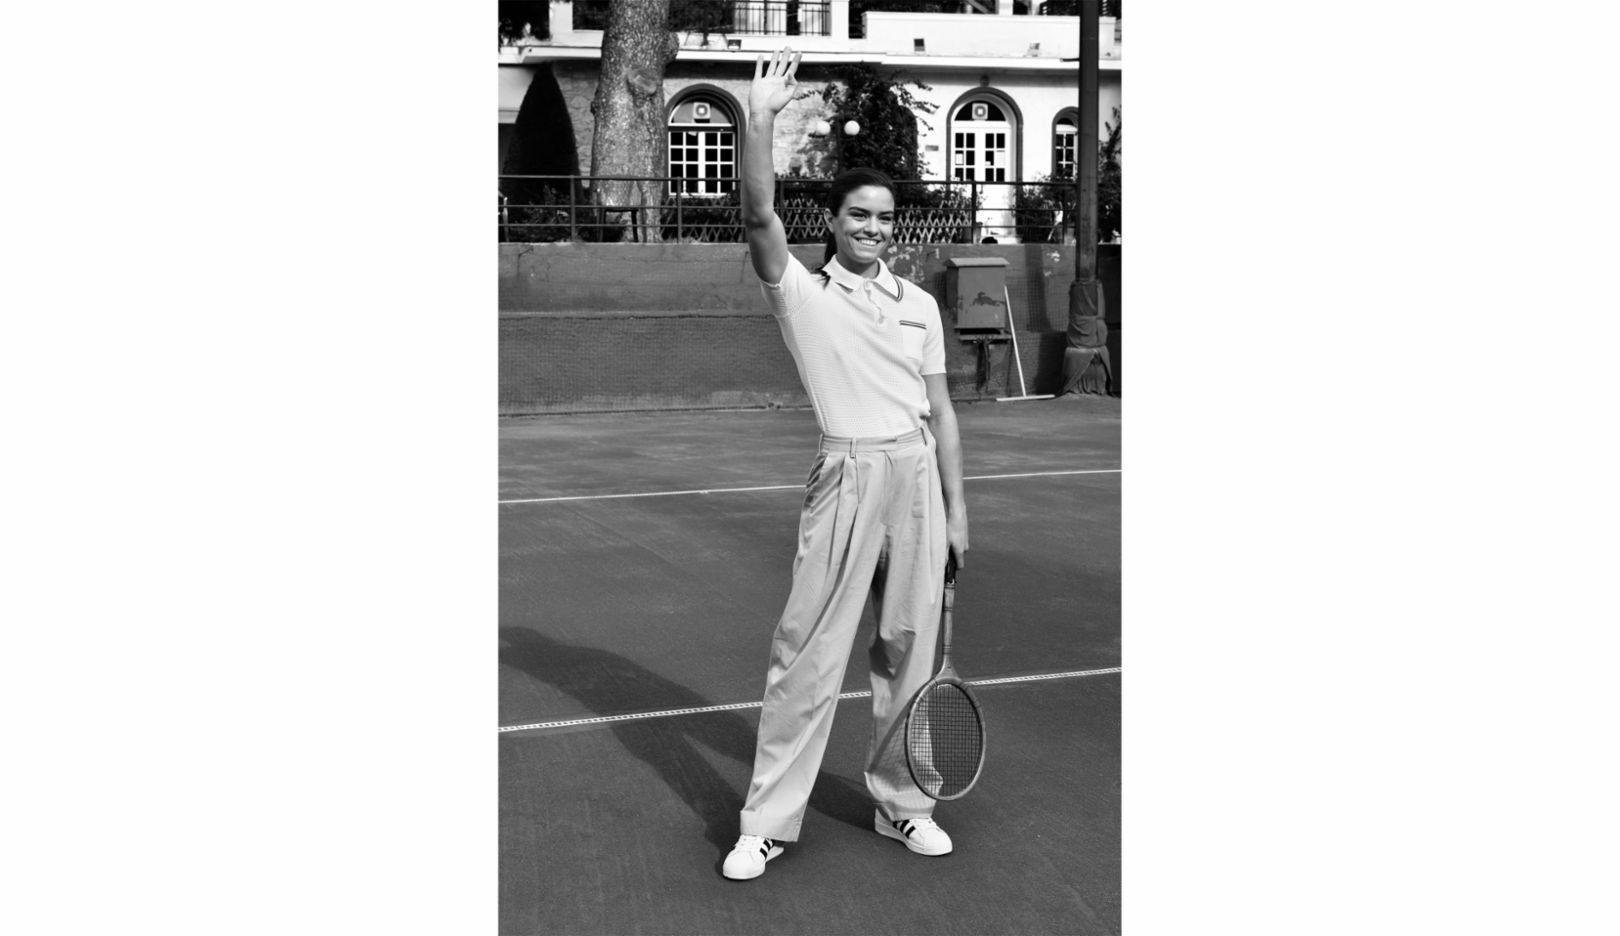 아테네 론 테니스 클럽에서 마리아 사카리. “1930~40년대를 오마주한 사진이죠”라고 레이트메리츠는 설명한다. “마리아는 아테네에서 자랐어요. 조부모와 어머니도 오래된 이 클럽에서 테니스를 쳤죠. 그래서 이런 배경의 이런 그림을 보여주고 싶었어요.” 